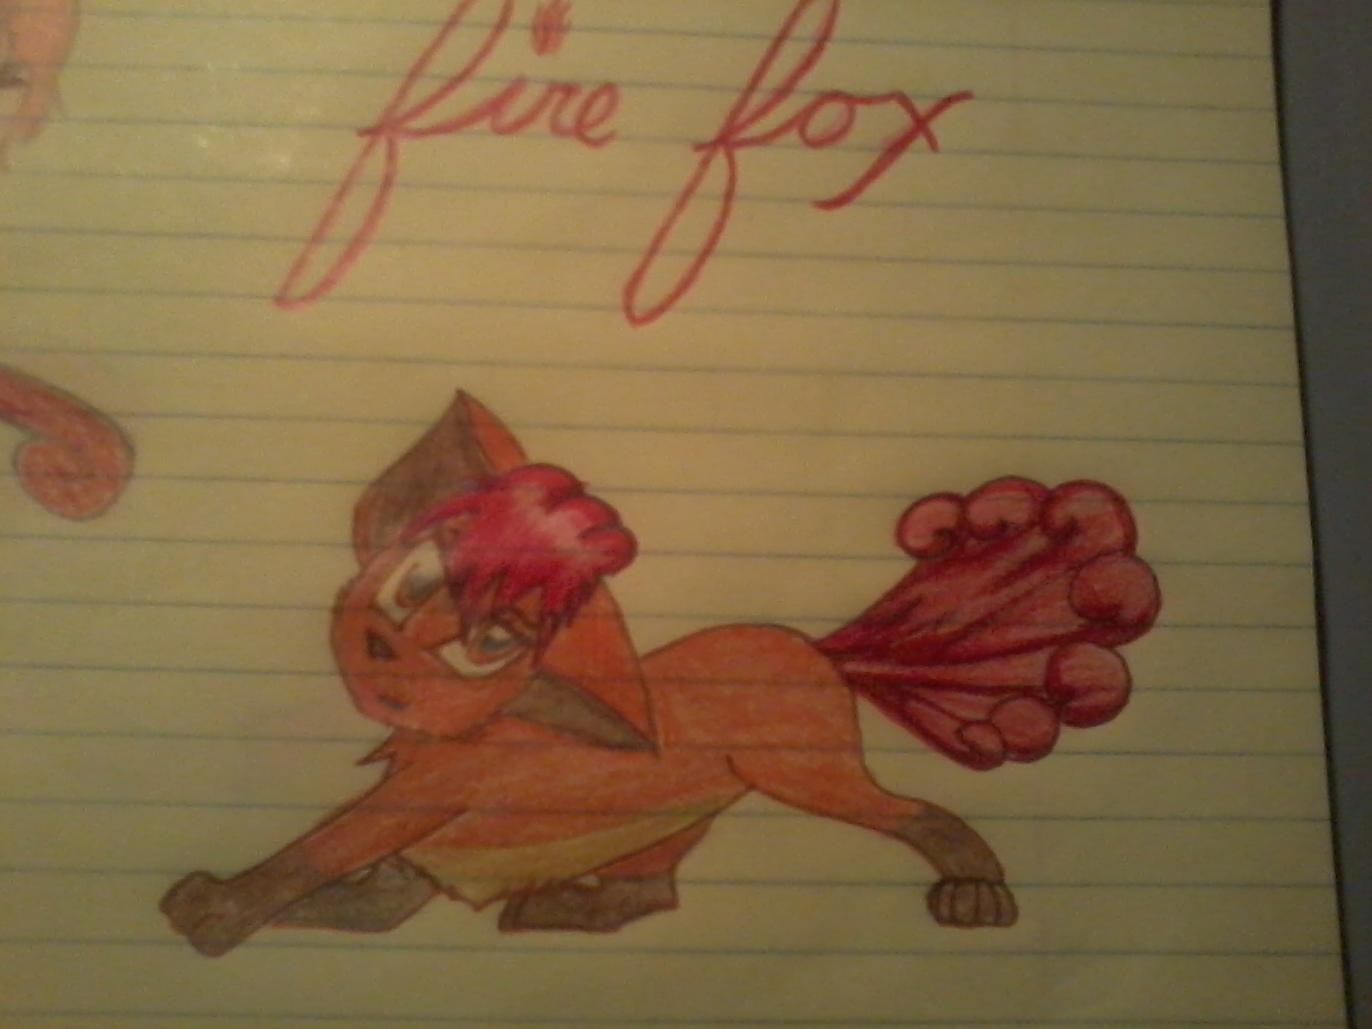 Fire Fox by bean153